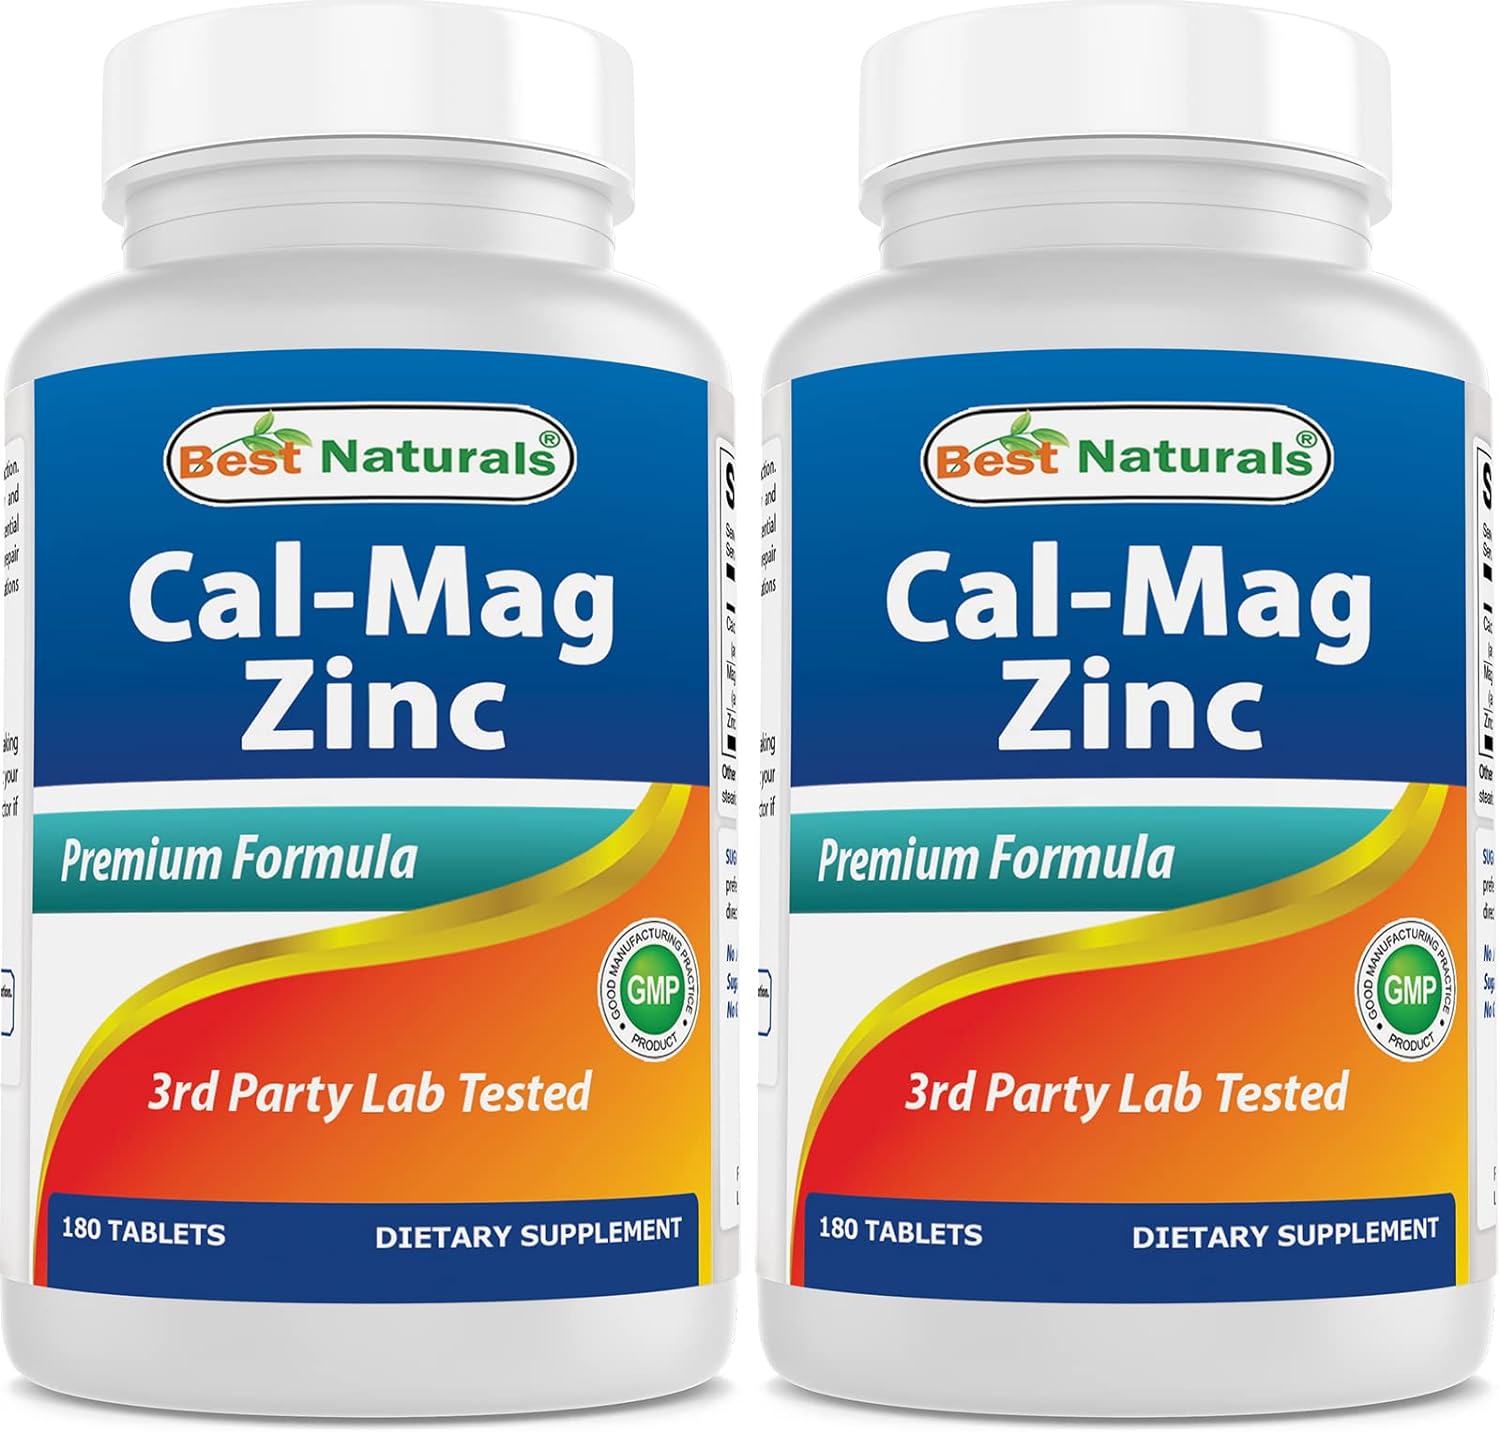 2 Packs - Best Naturals Calcium Magnesium Zinc - 180 Tablets - Essential Cal Mag Zinc Mineral Complex (Total 360 Tablets)